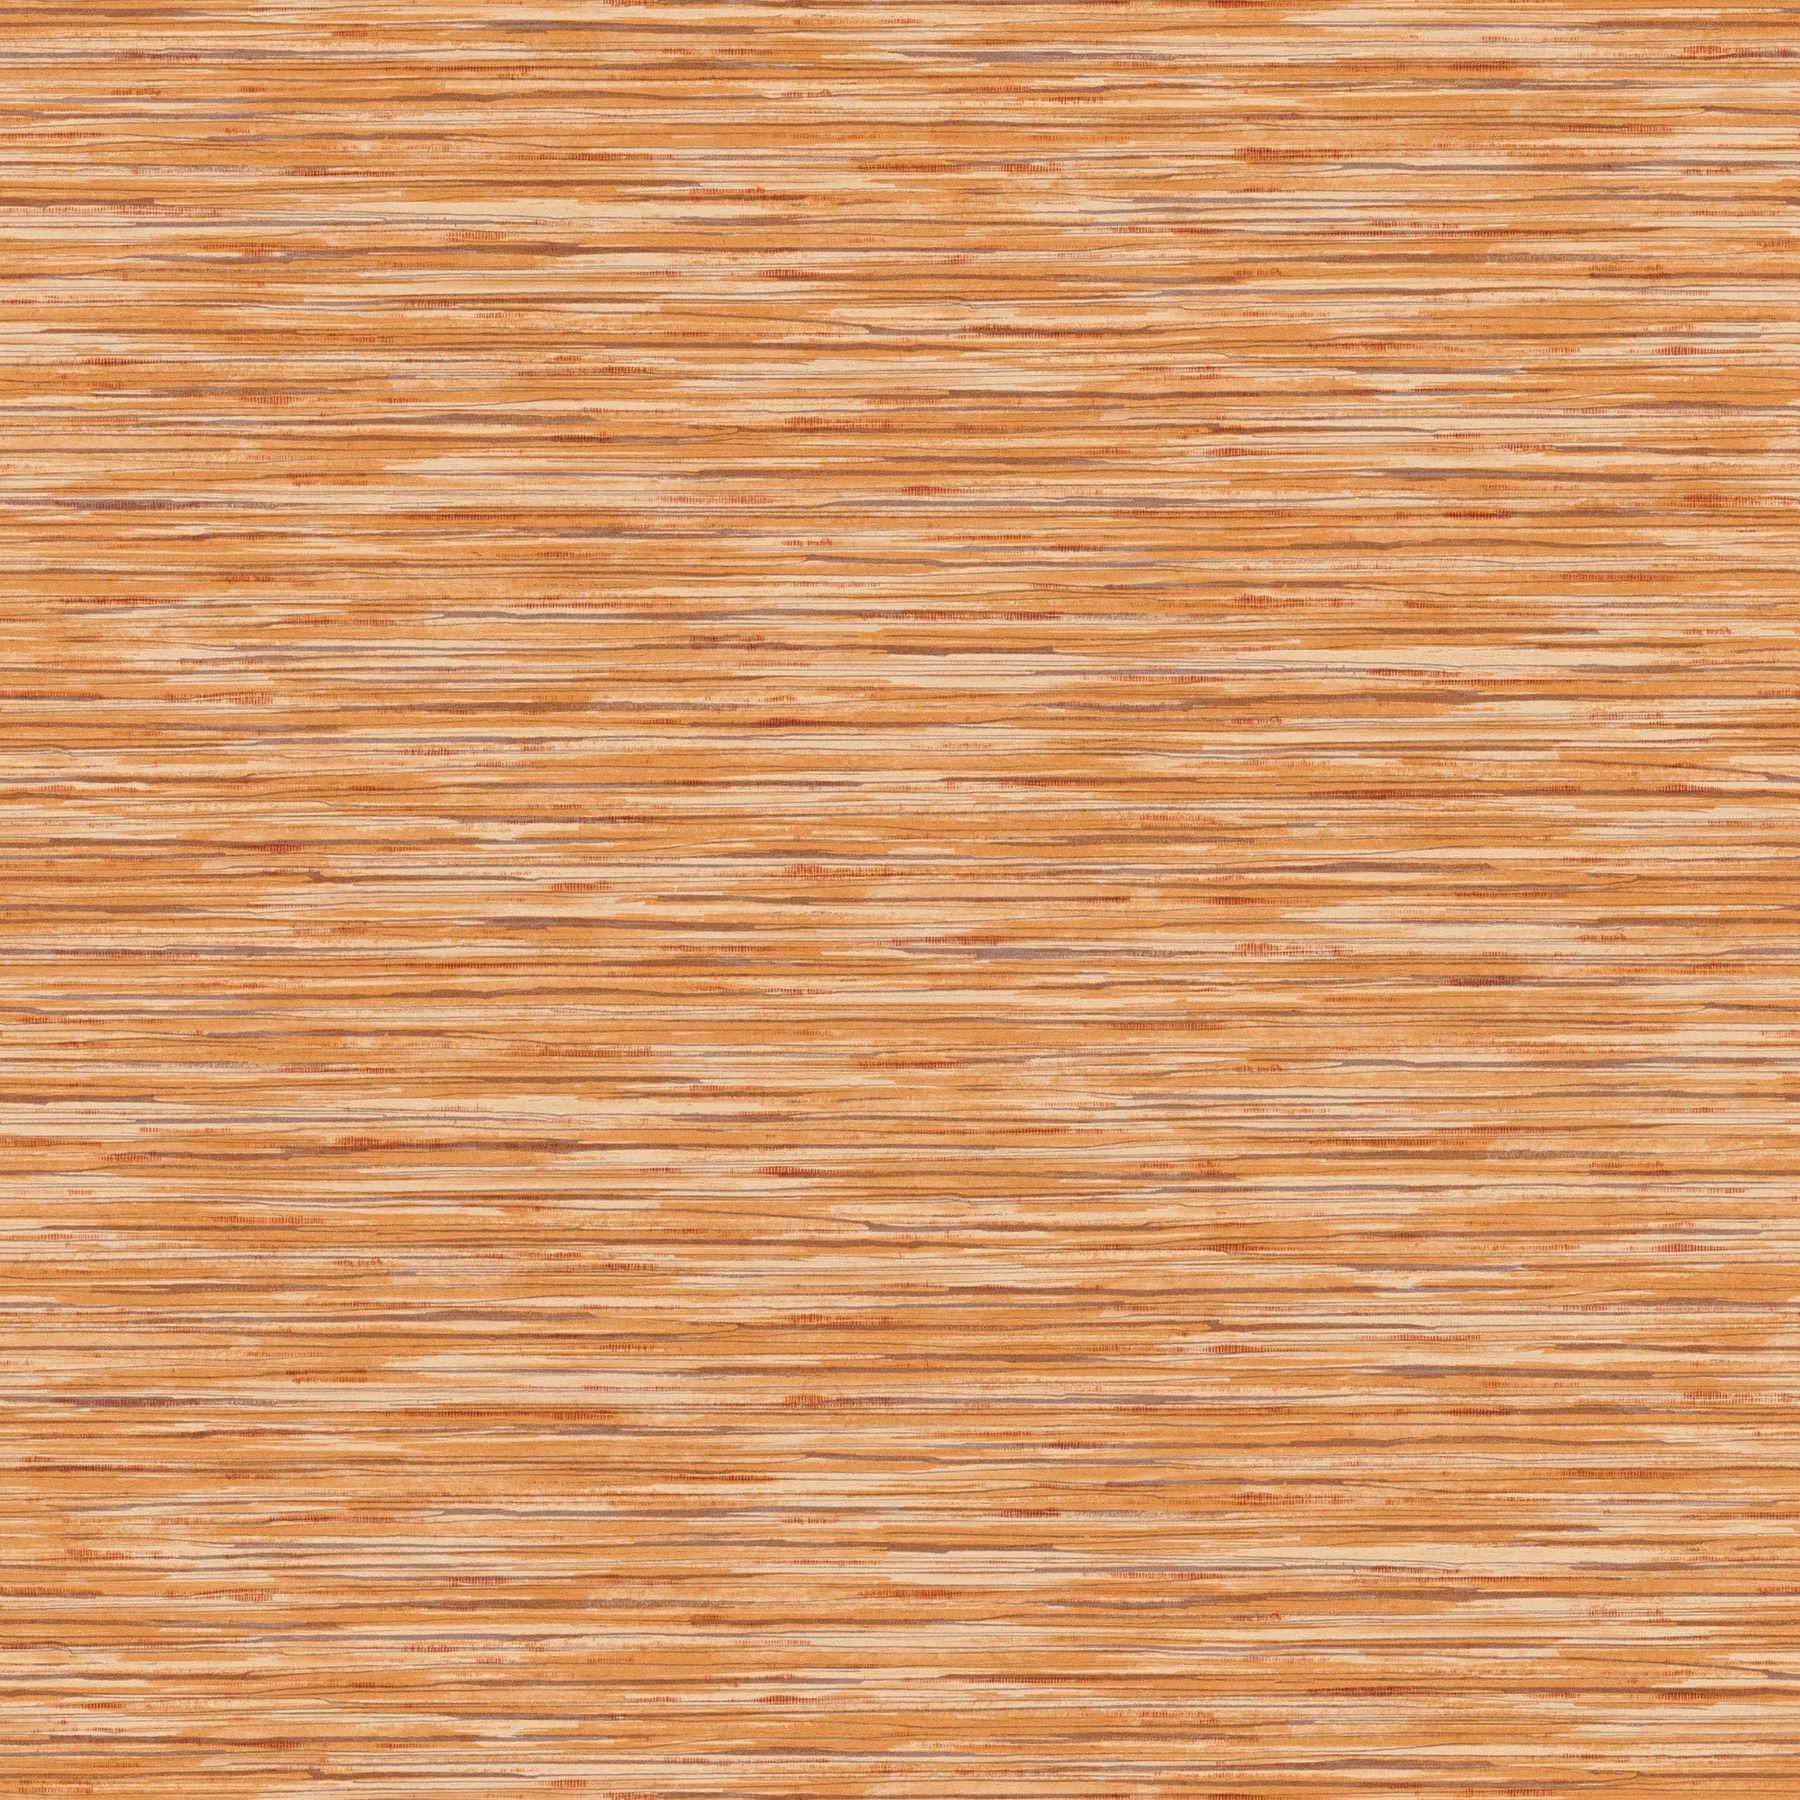 Vliesbehang gevlekt met kleurenpatroon - oranje, bruin
